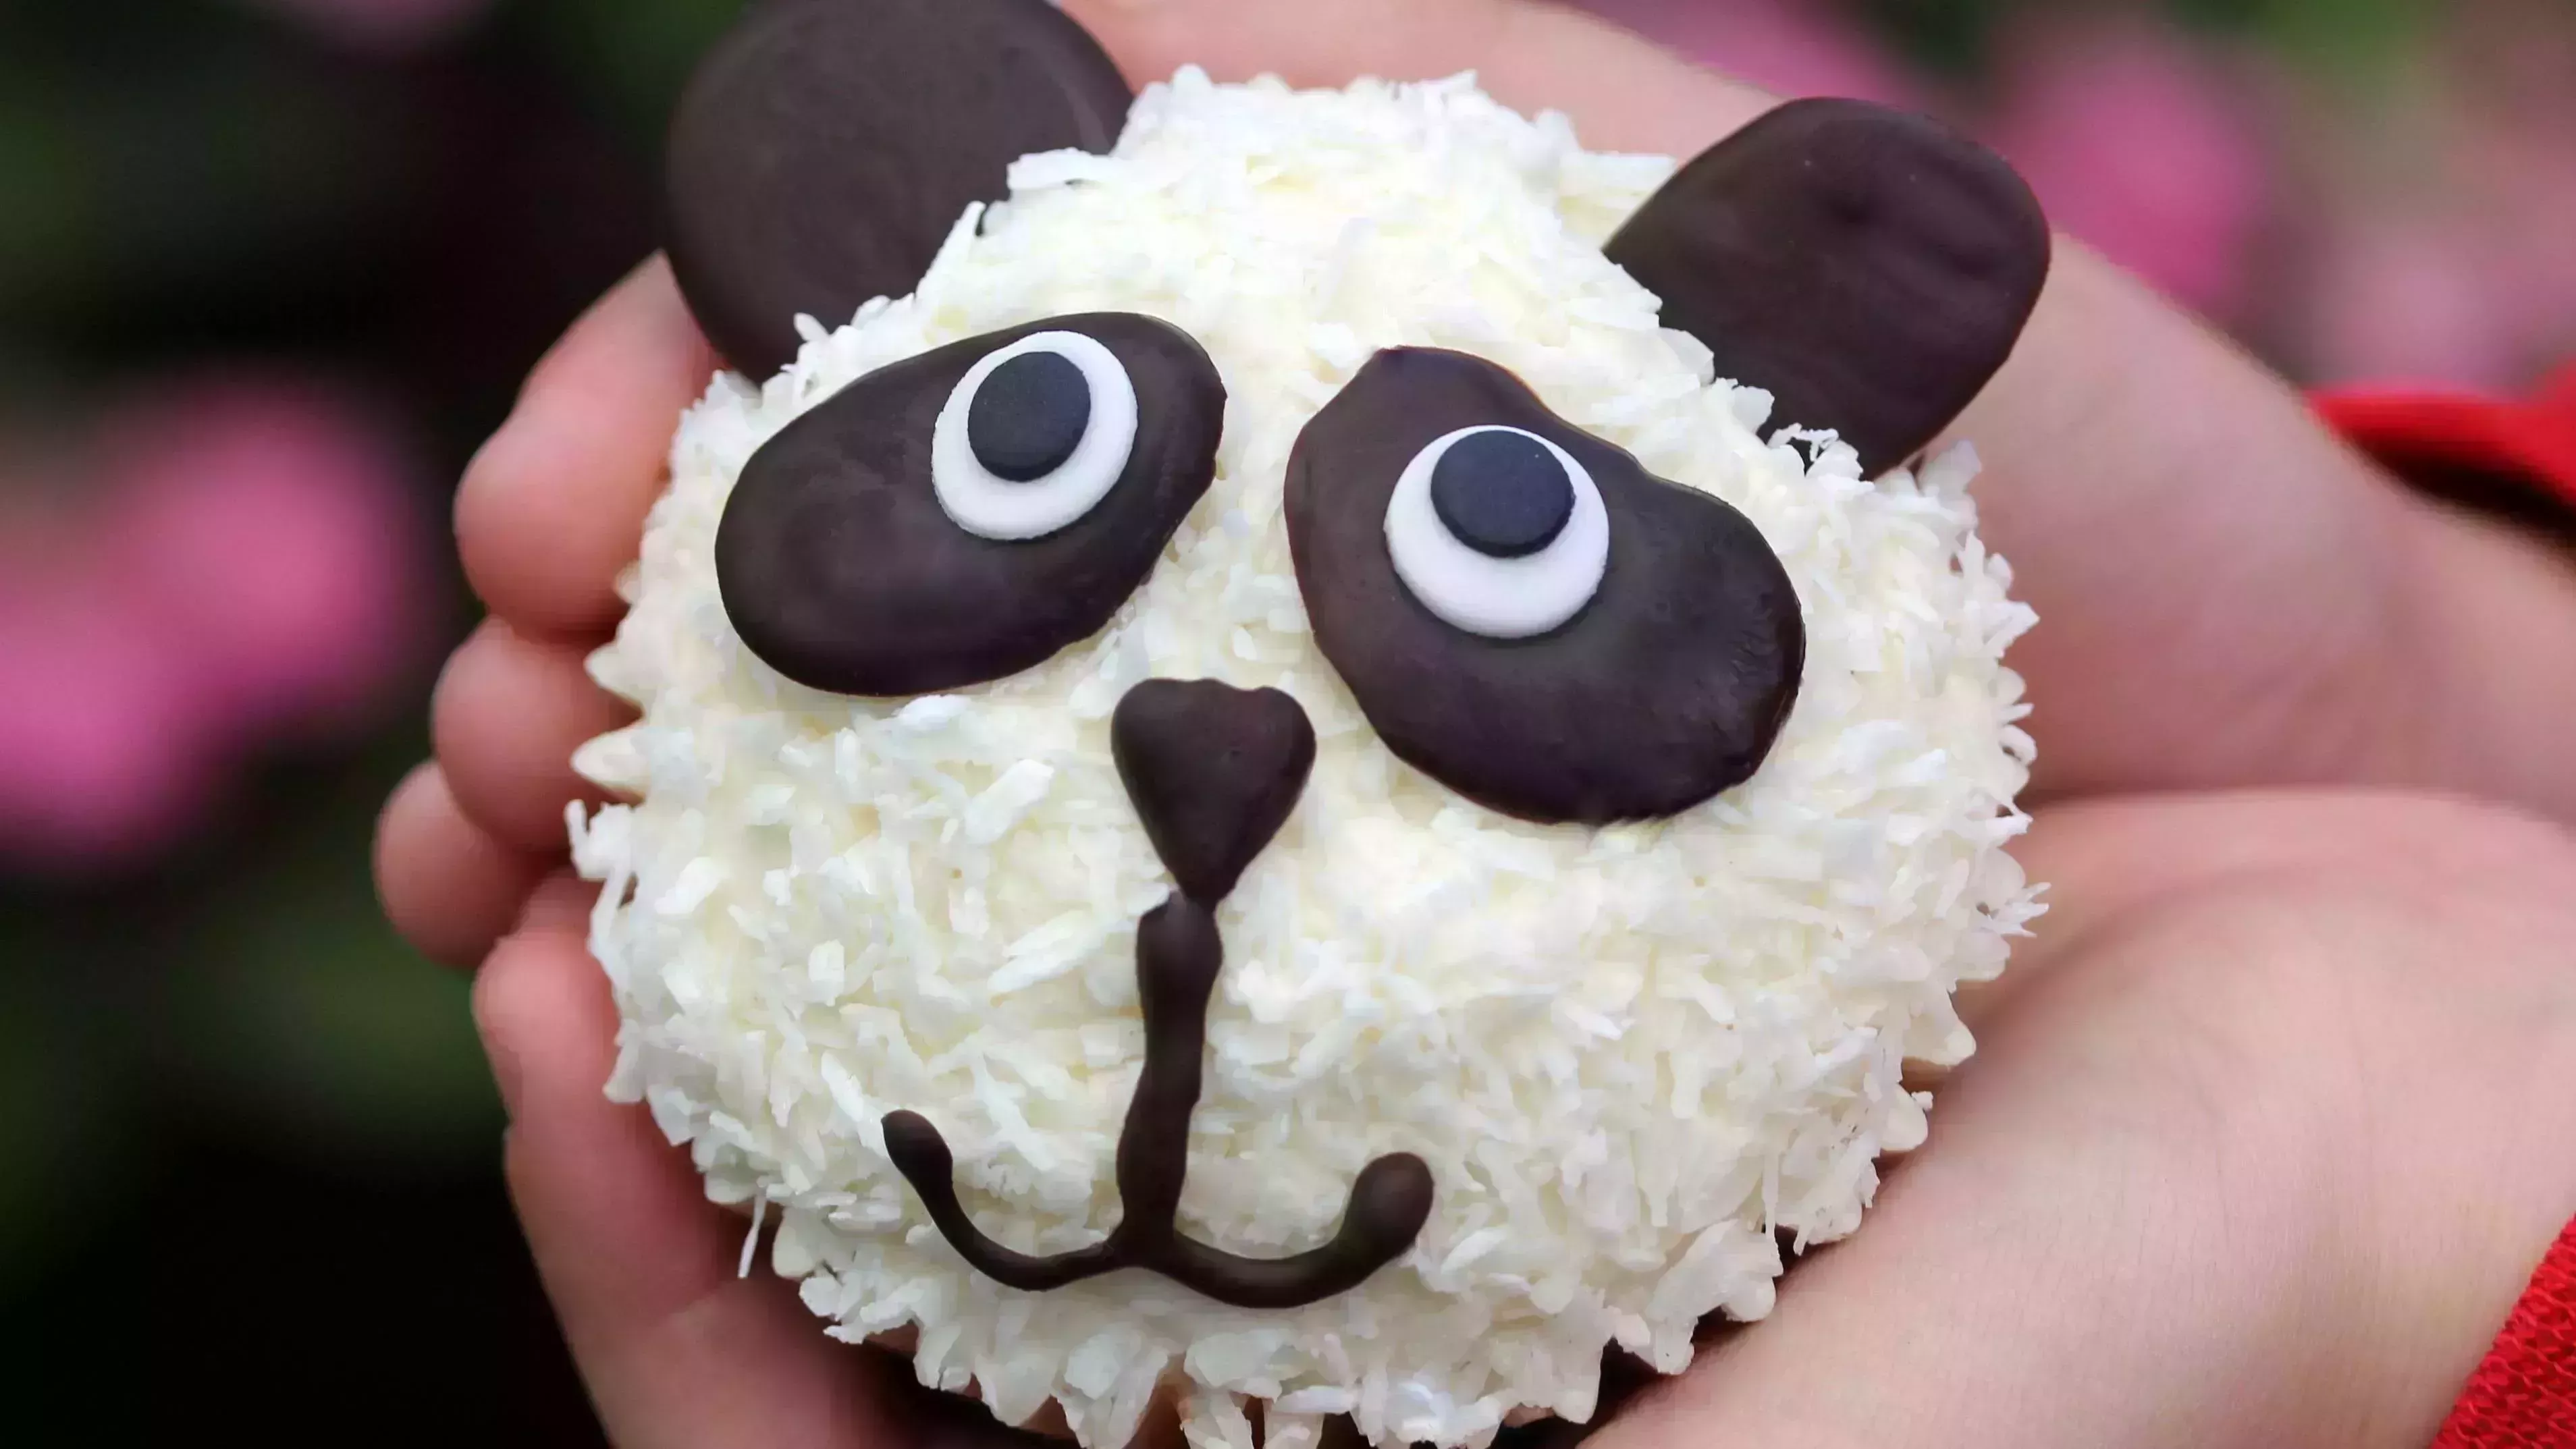 15 cupcakes para cumpleaños infantiles que puedes hacer tú mismo (el nº 8 tiene un factor sorpresa)